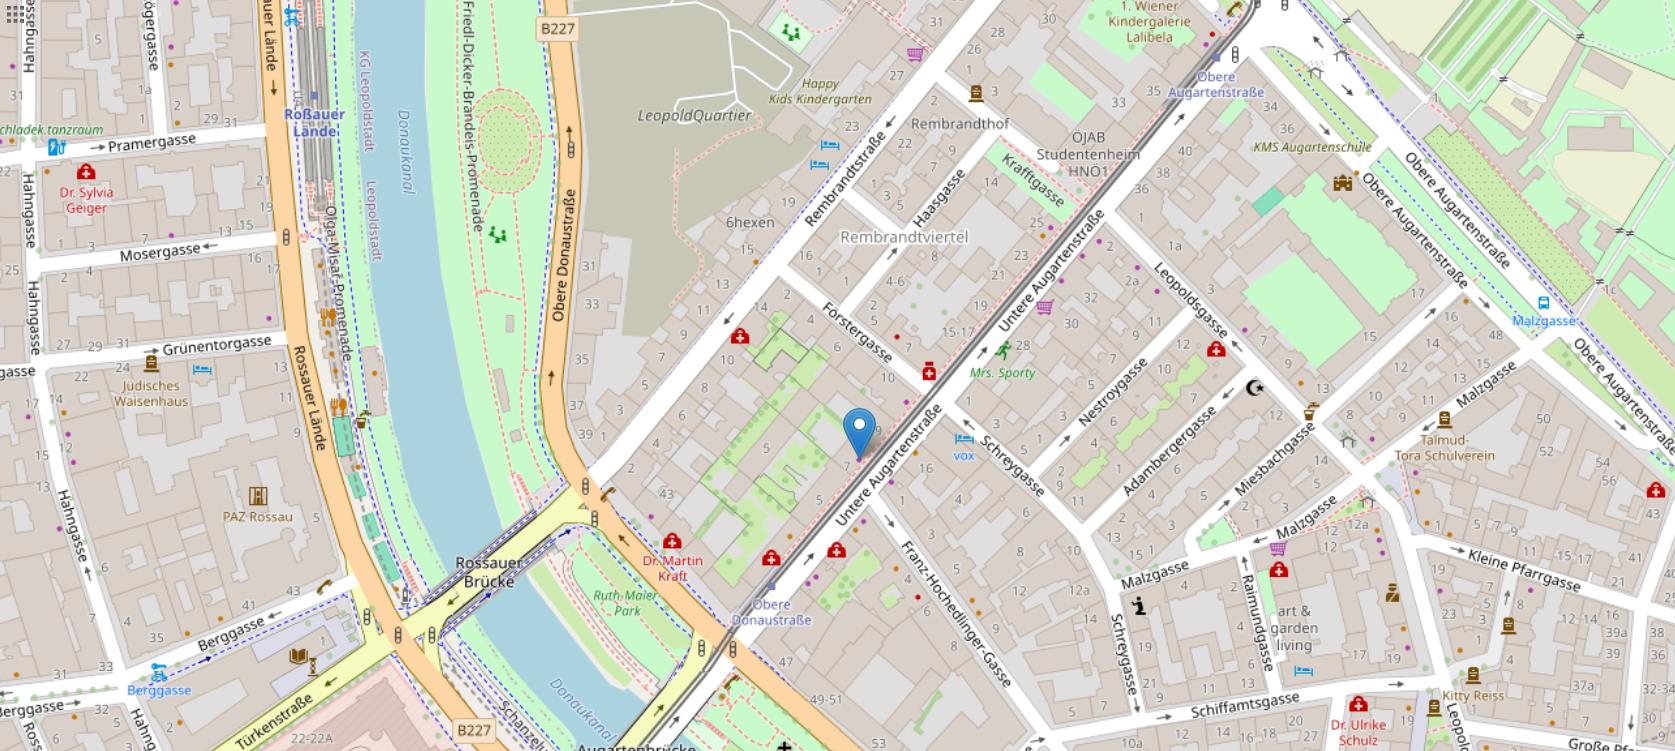 Michis Naturkosmetik Karte Standort Untere Augartenstrasse 7 1020 Wien